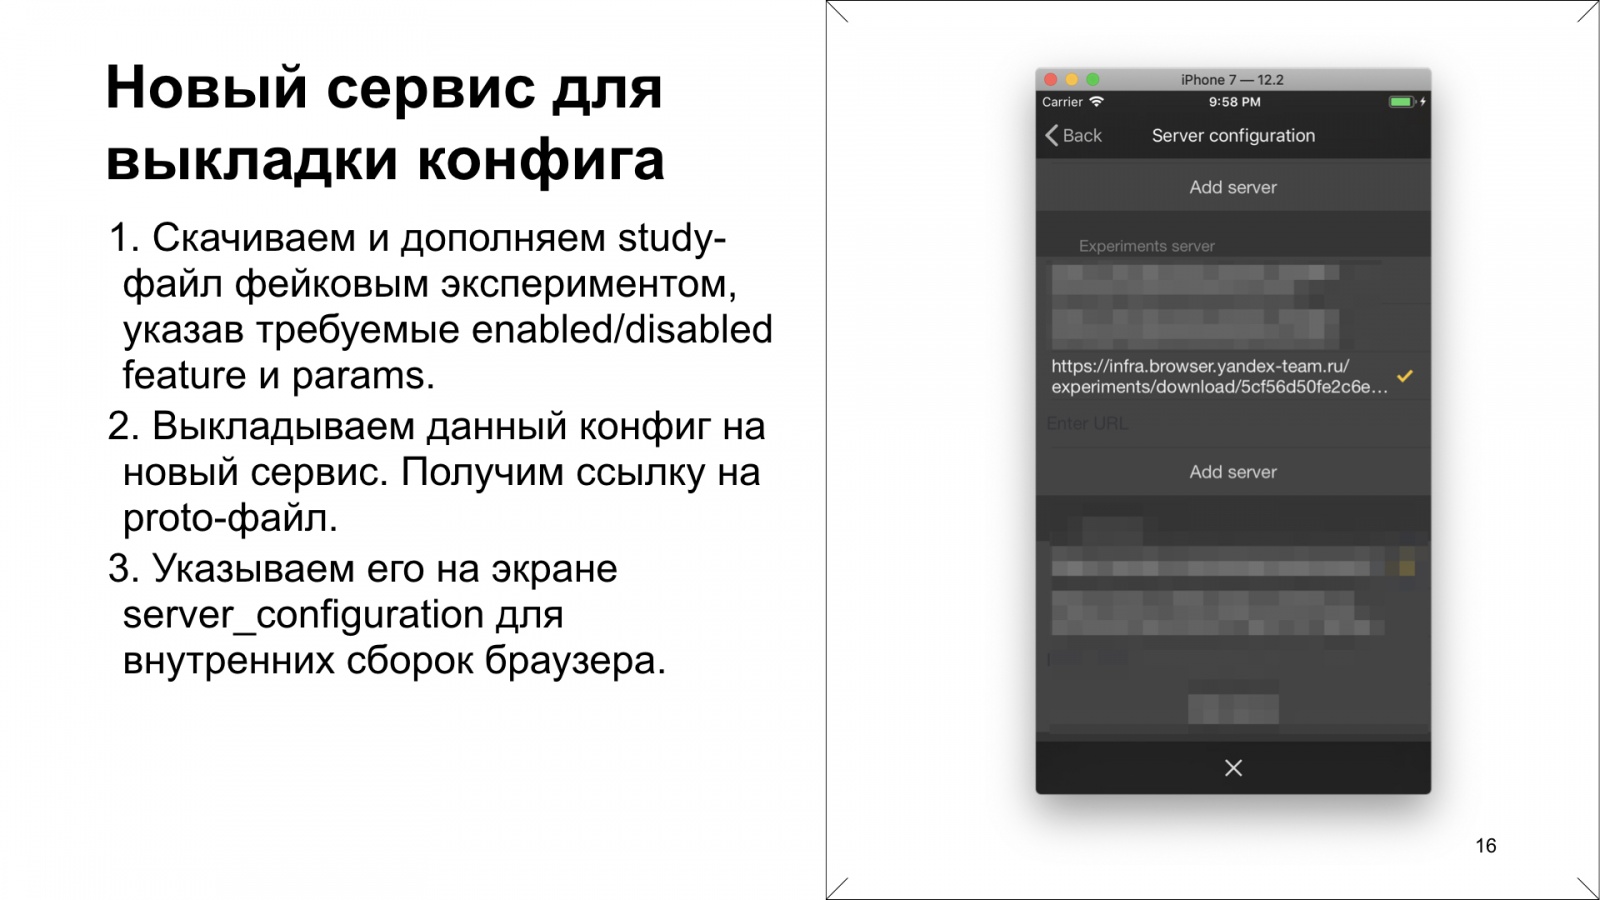 Как Браузер для iOS А-Б-тестирование улучшал. Доклад Яндекса - 17